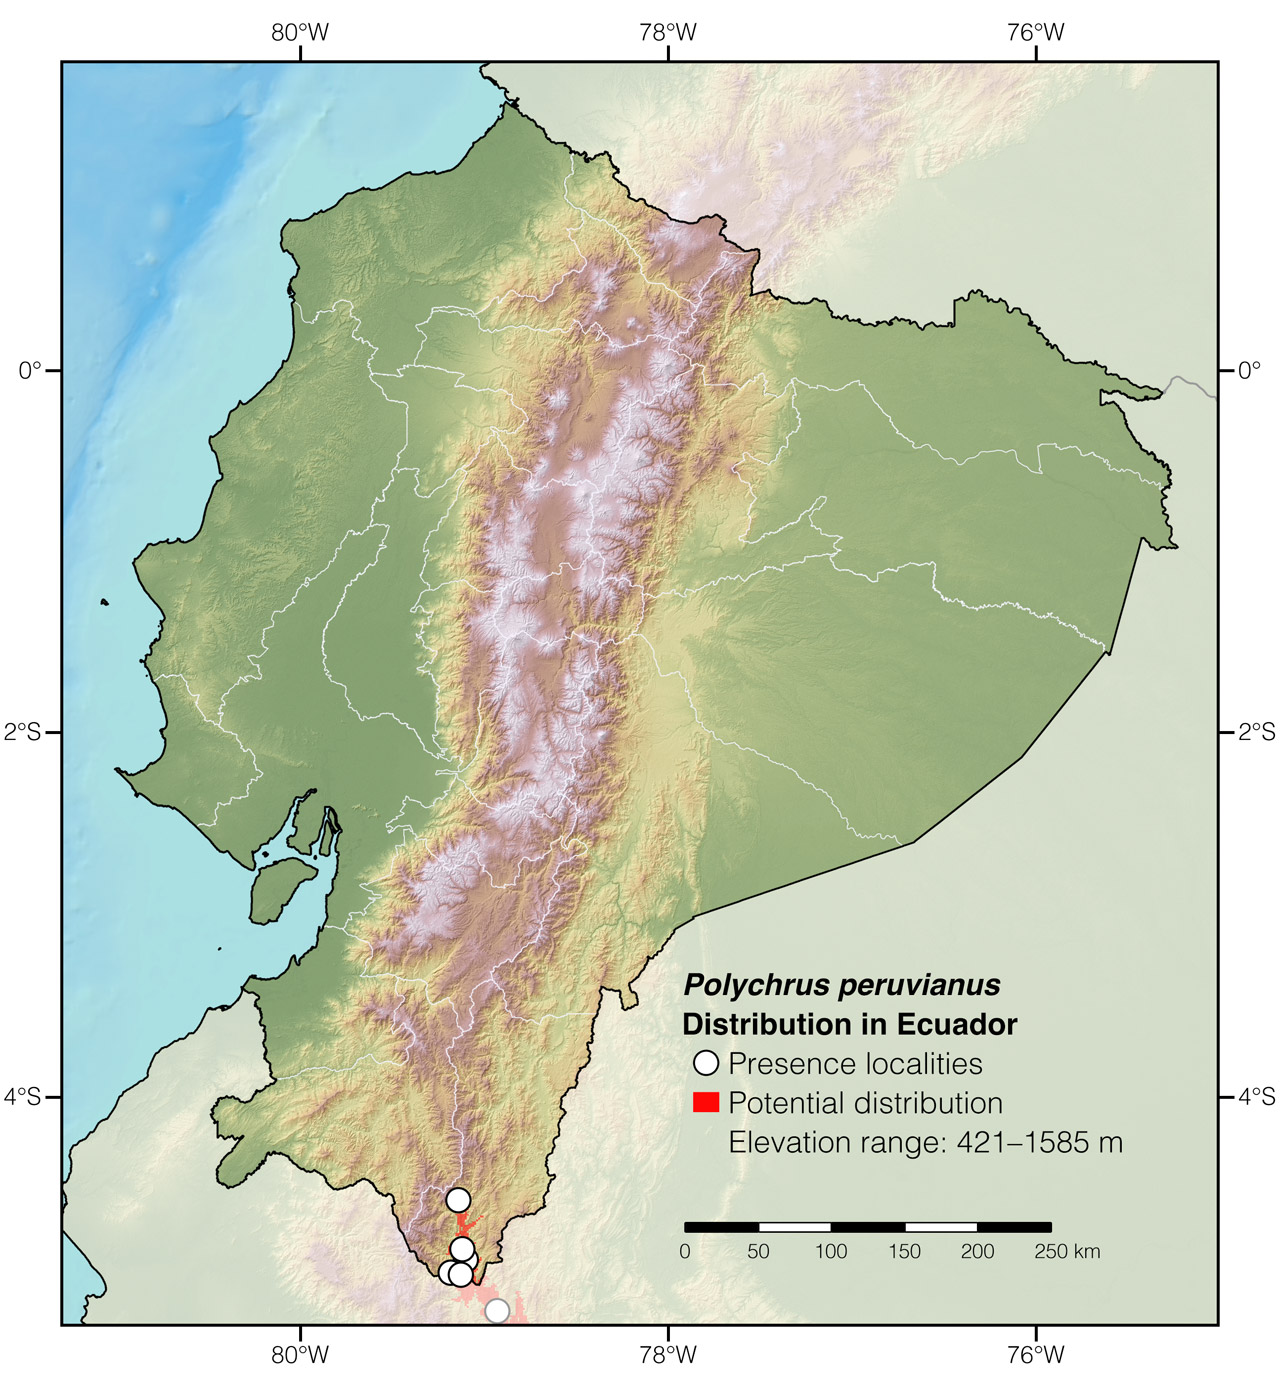 Distribution of Polychrus peruvianus in Ecuador